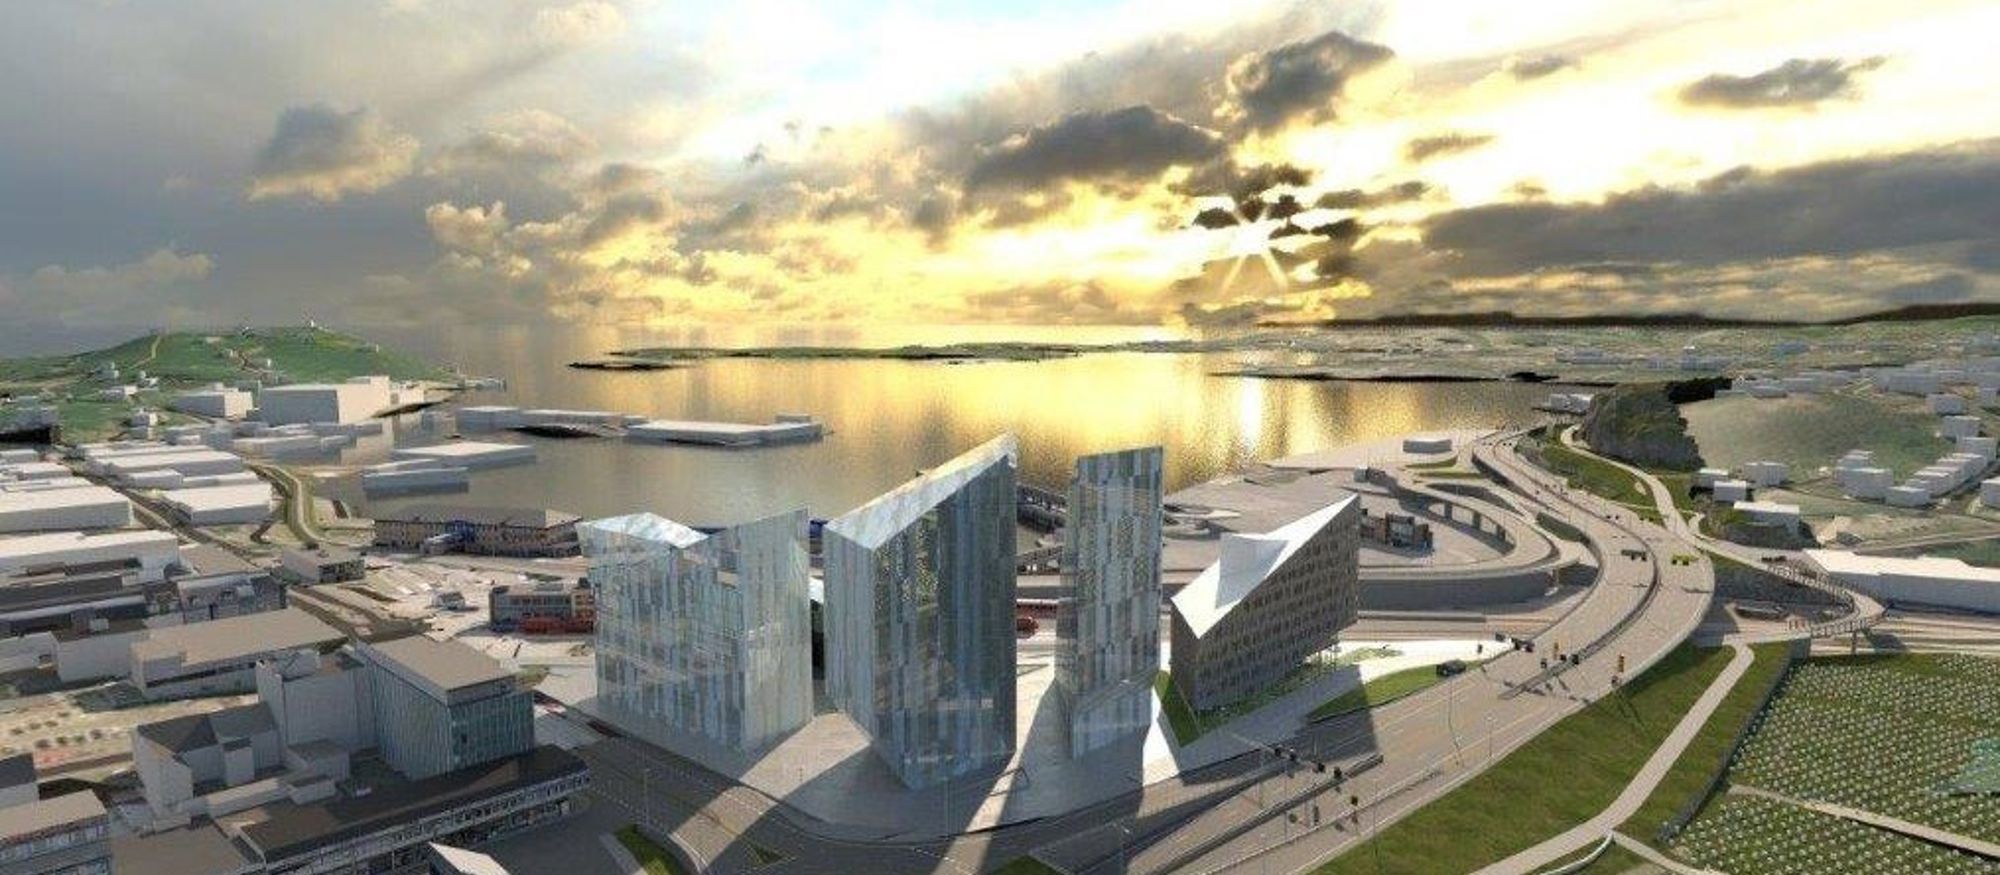 Bilde av Quadrum bygg E, stort bygg i Kristiansand med utsikt mot sjøen